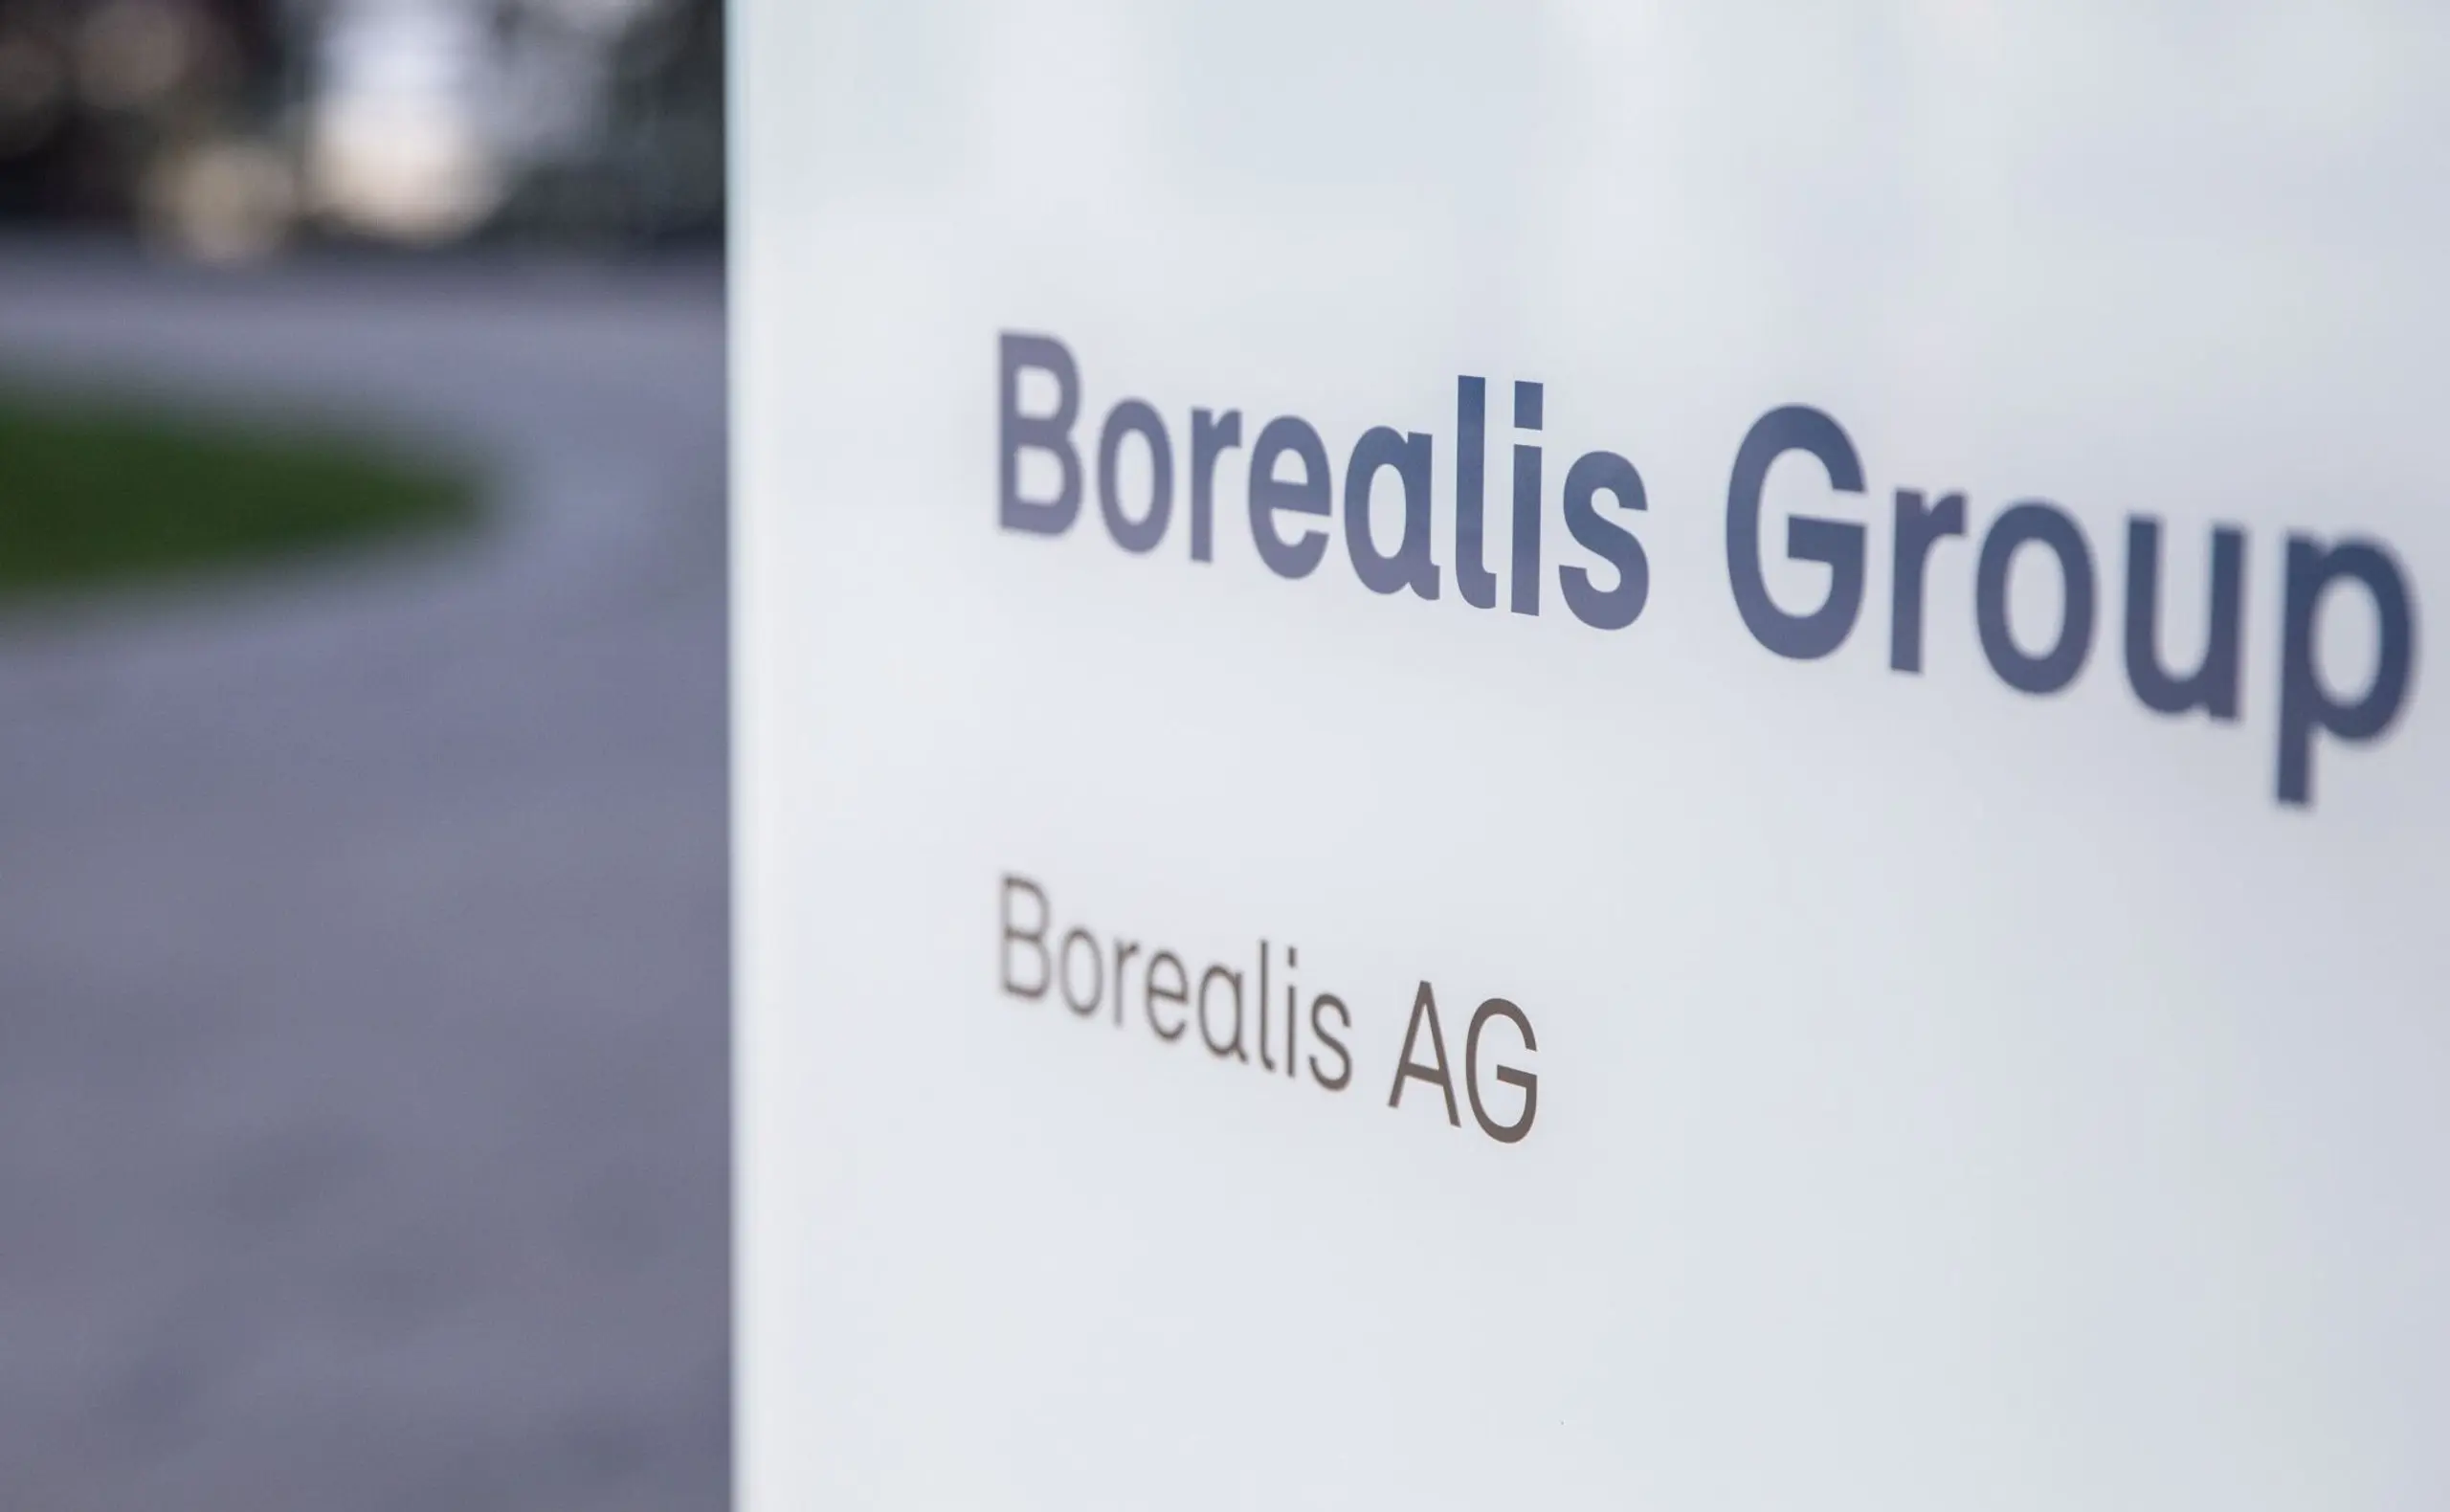 Das zur OMV gehörende Chemieunternehmen Borealis liegt auf Rang 7 der umsatzstärksten Unternehmen Österreichs.